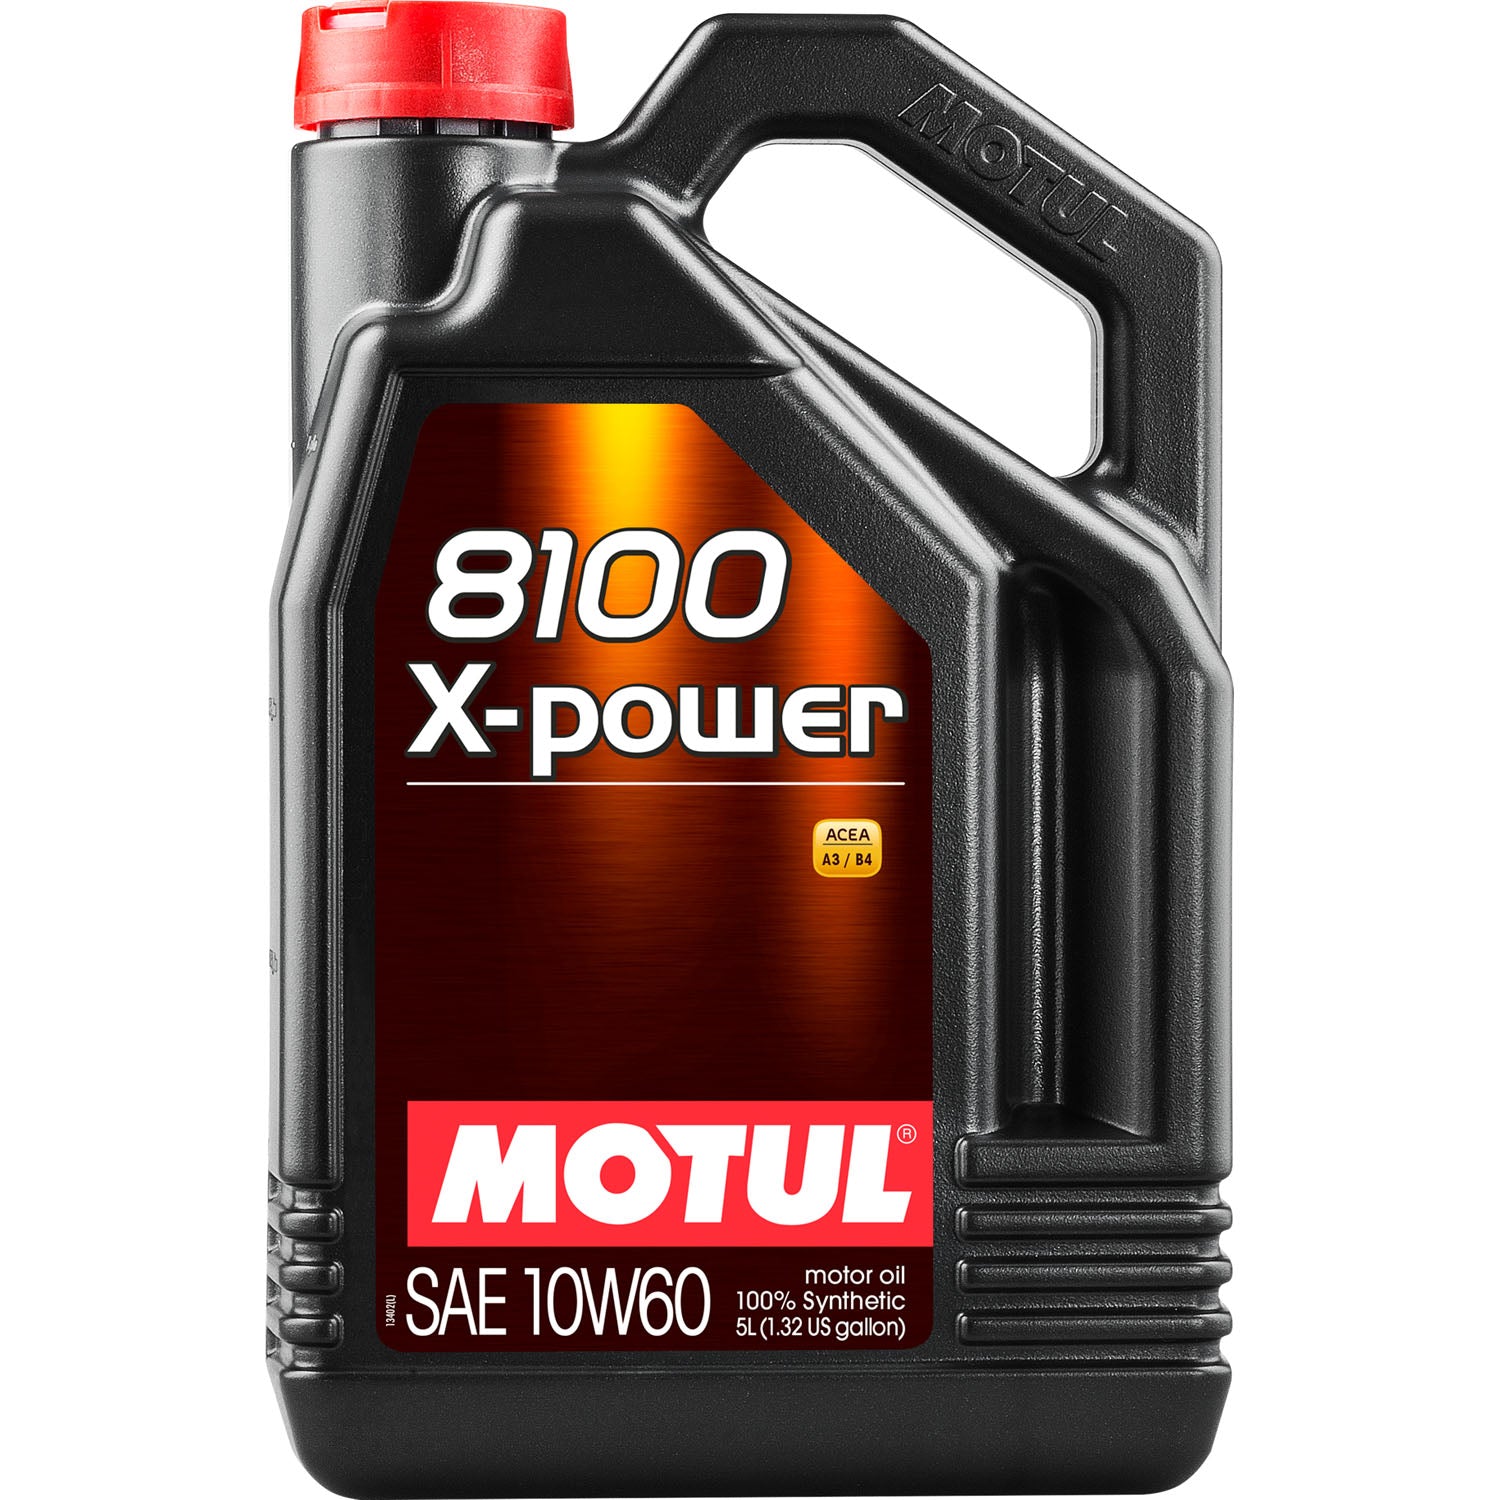 Motul 8100 X-Power Synthetic Motor Oil 10W60 - 5 Liter